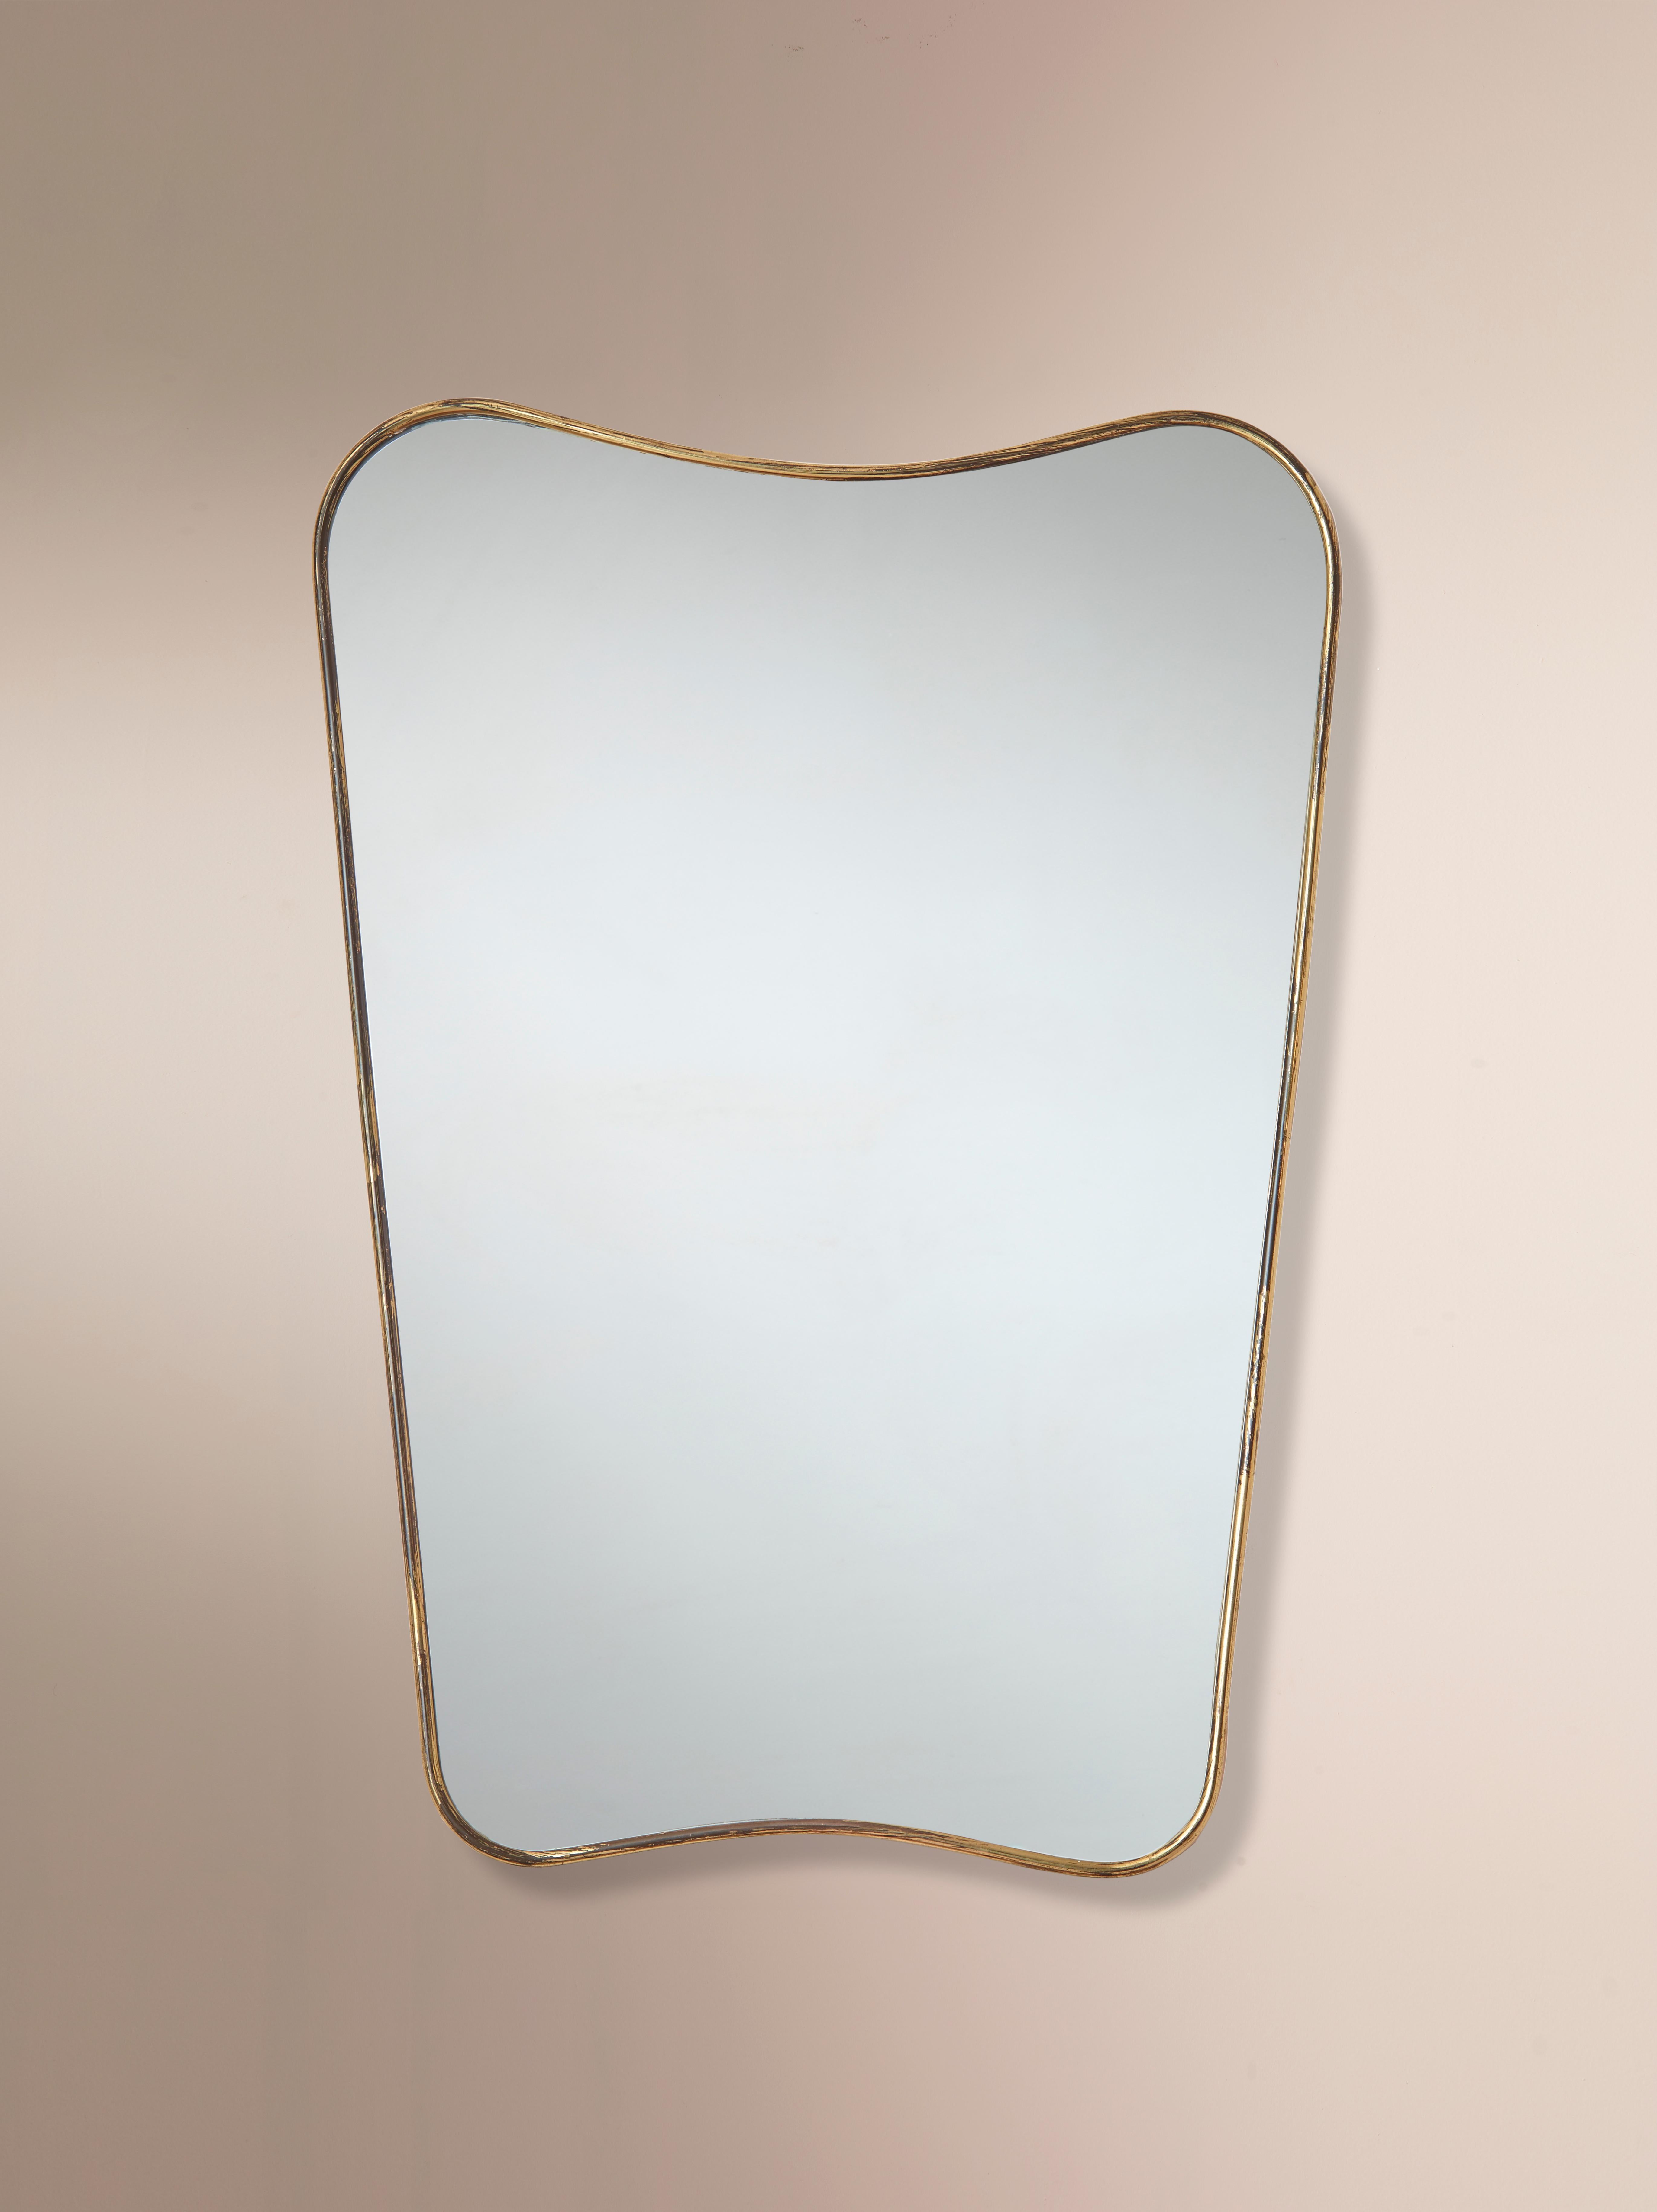 Miroir mural italien en laiton des années 1960 aux lignes simples, sophistiquées et harmonieuses.

Ce miroir italien en laiton est en bon état vintage. Le laiton a magnifiquement vieilli, mettant en valeur sa grande patine avec quelques oxydations